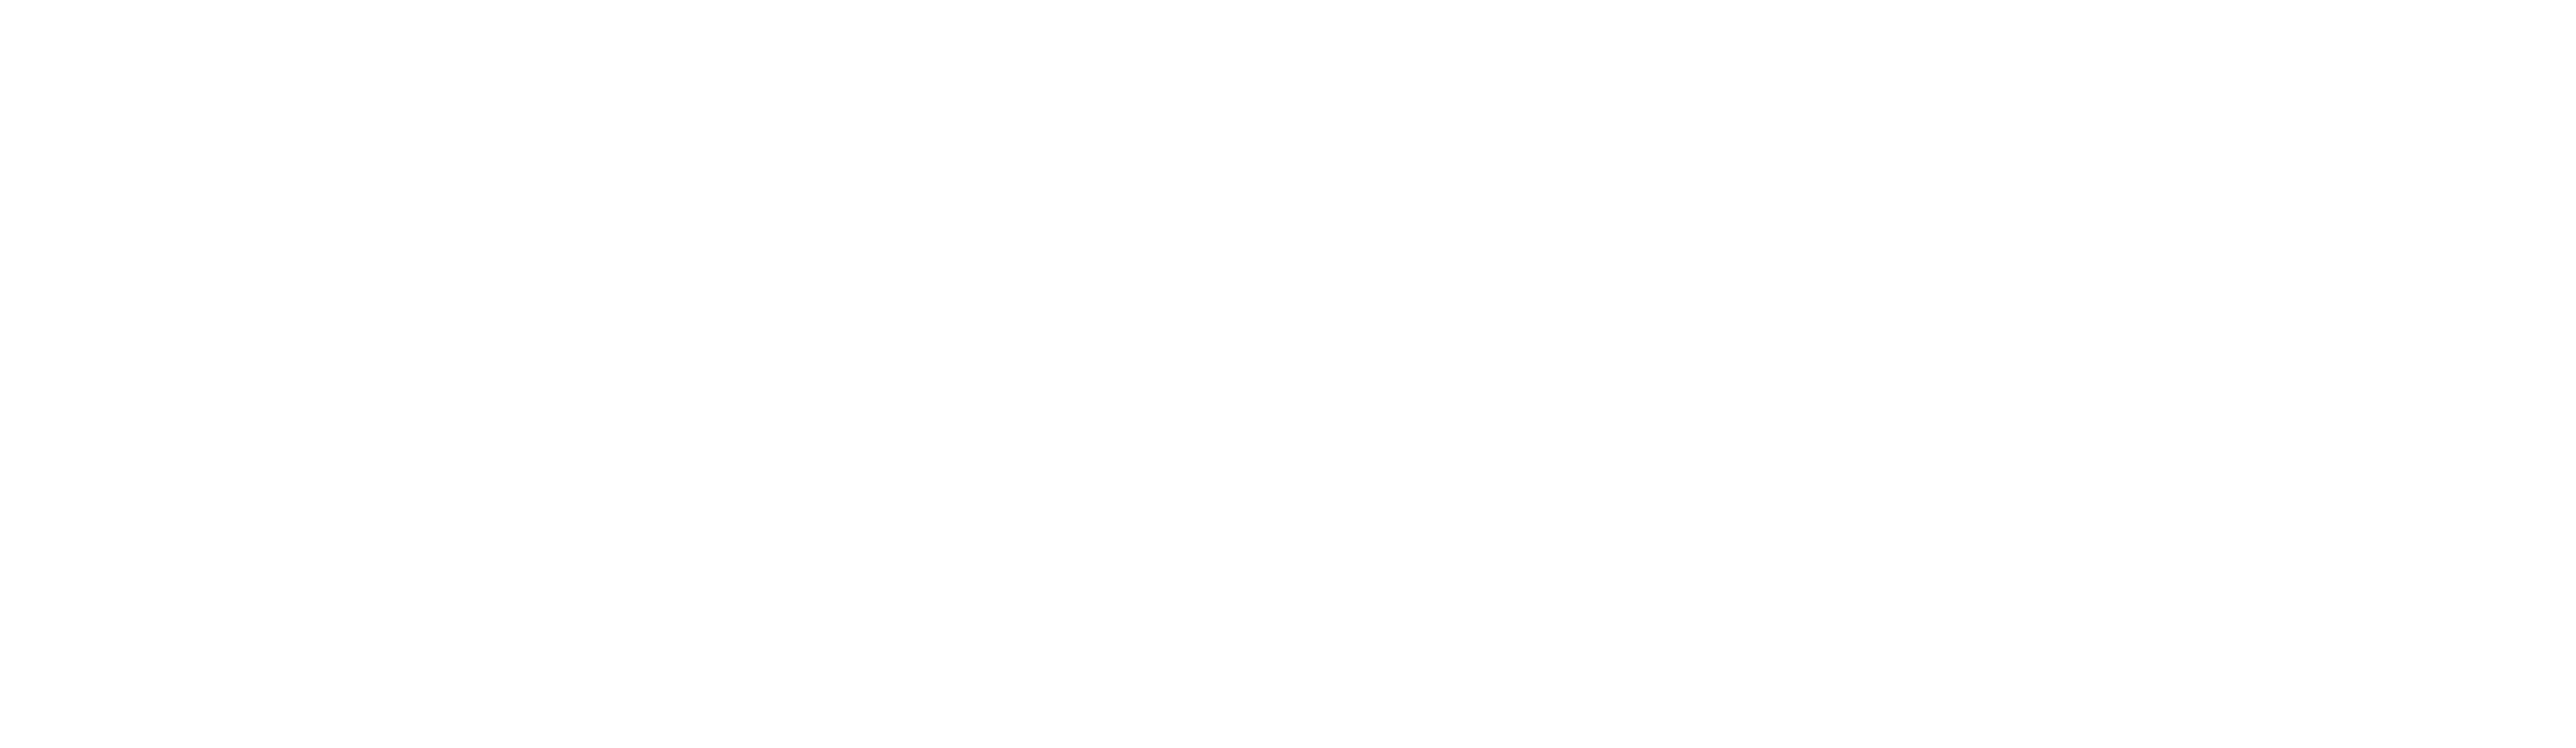 Hygge Social Hub – Ripetizioni, Co-Working, Studio Privato